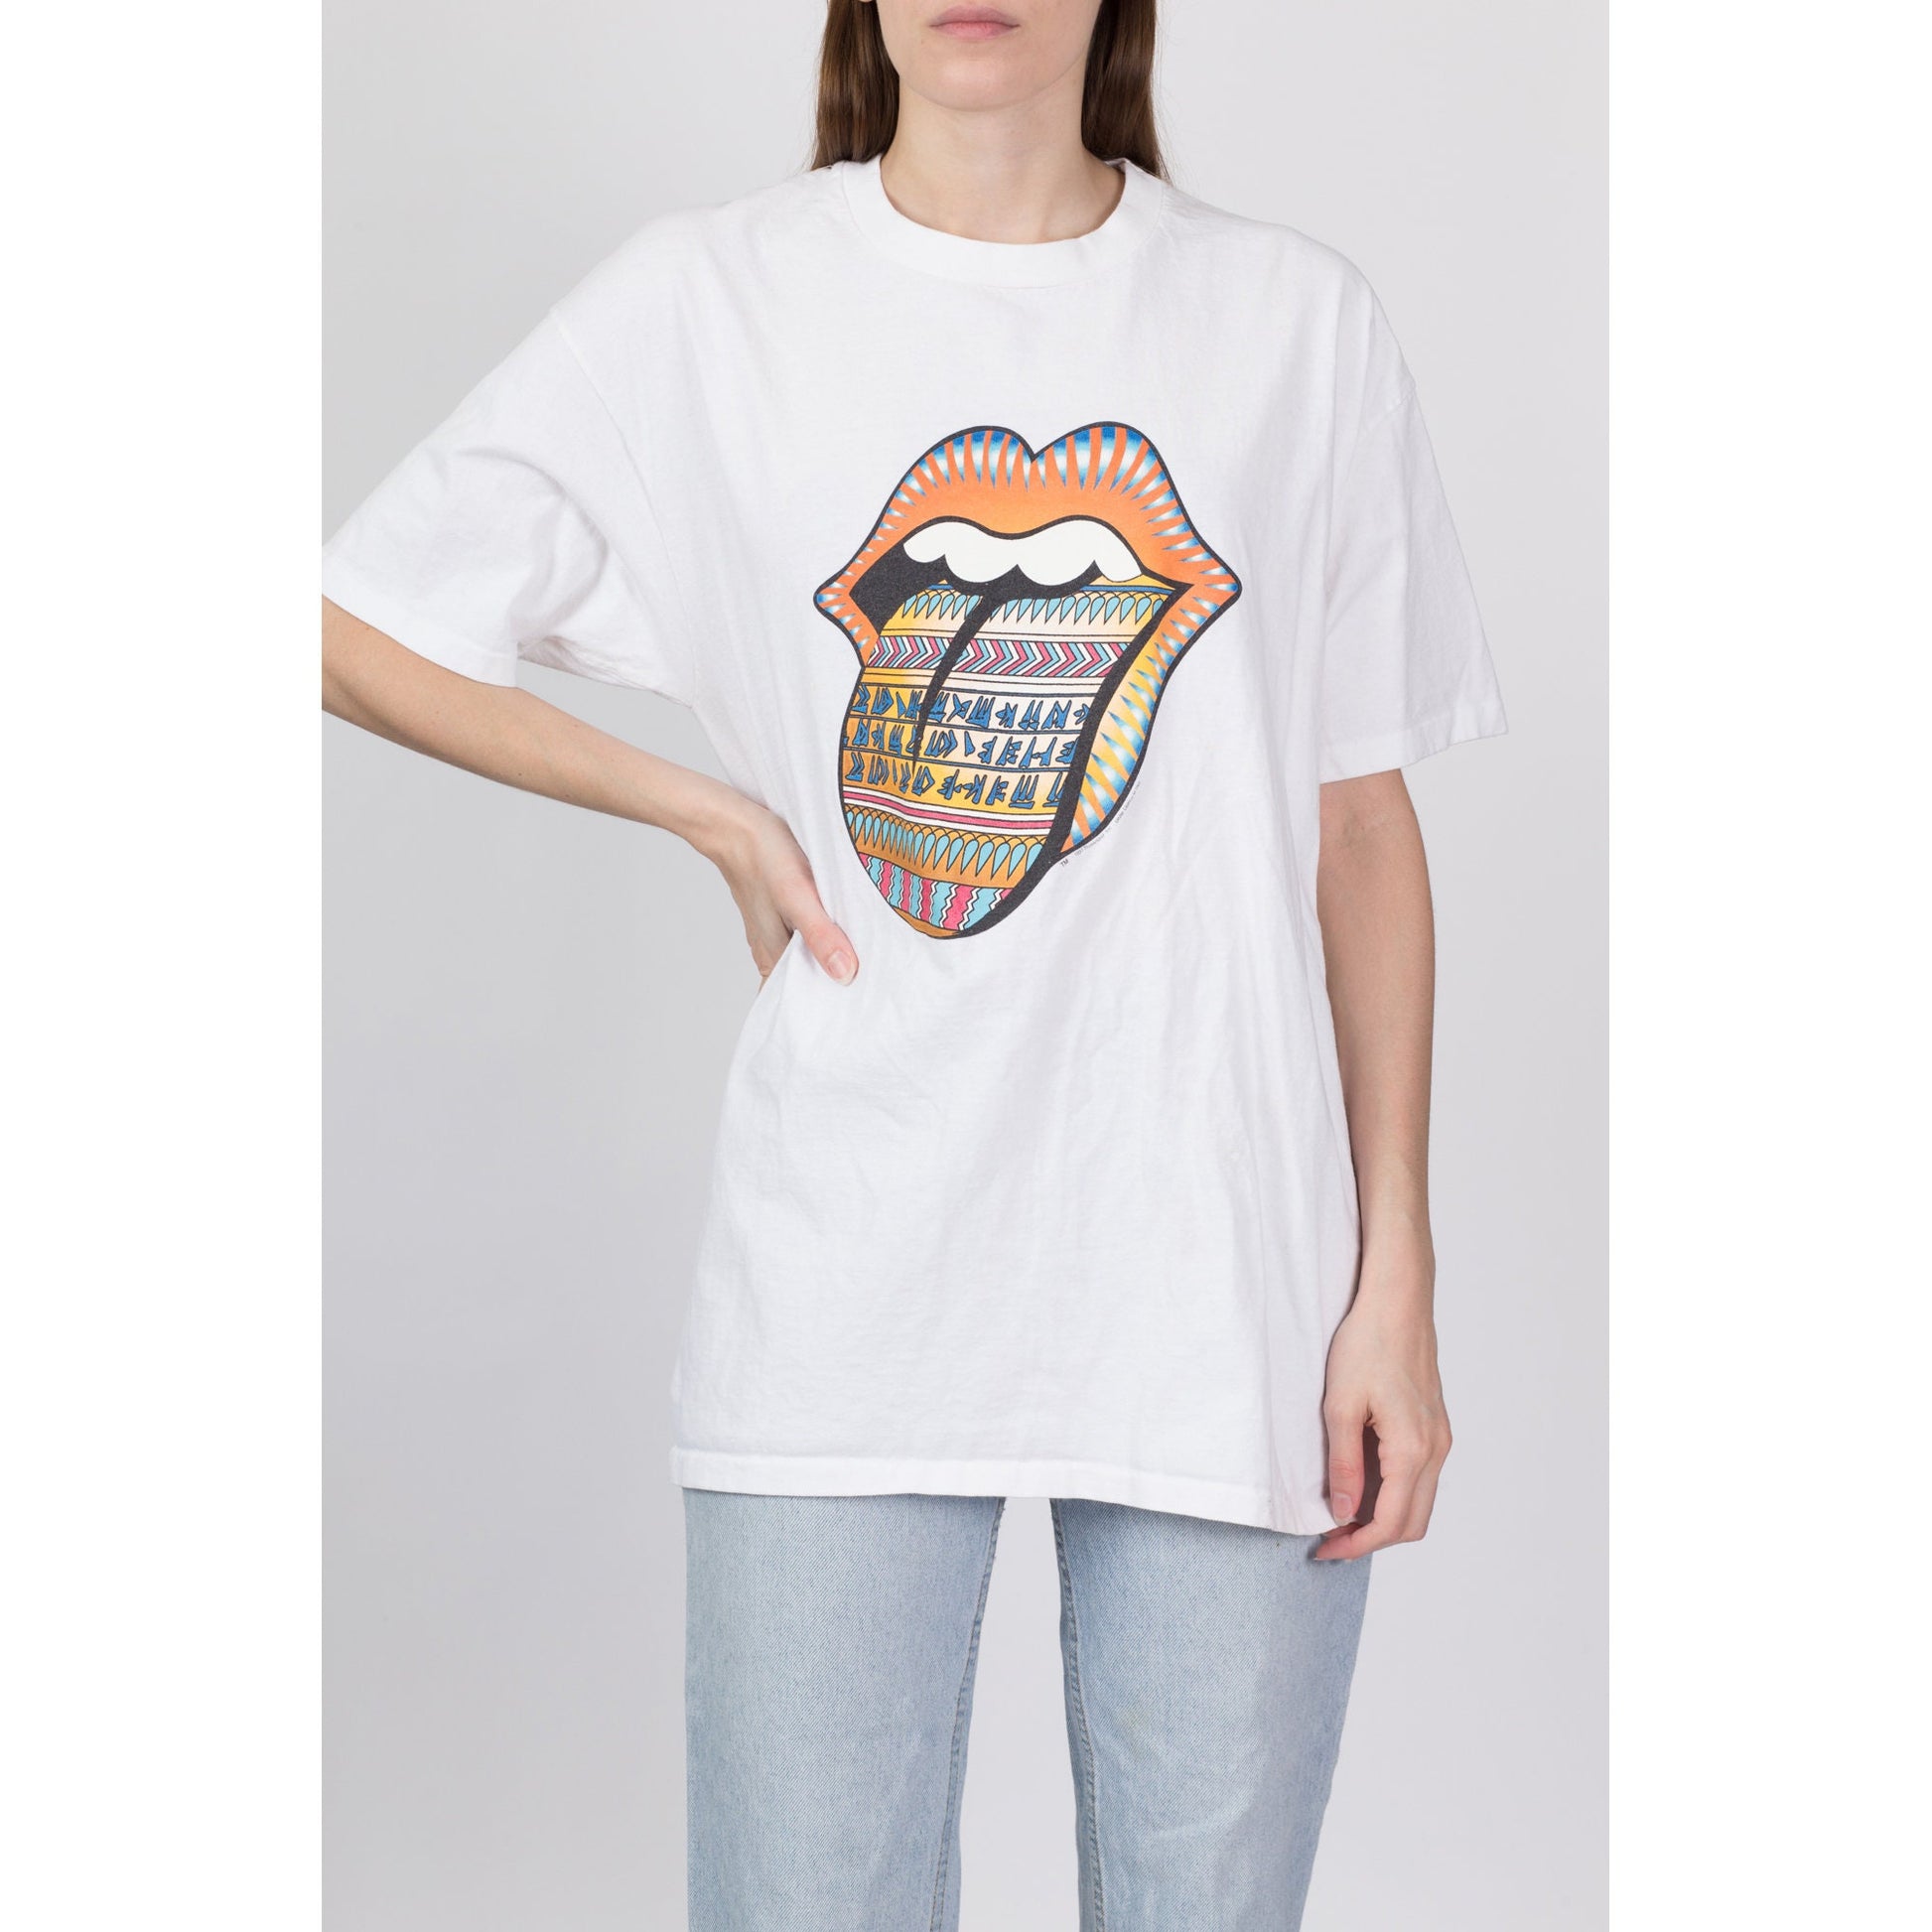 1997 Rolling Stones Bridges To Babylon Tour T Shirt - Men's Large, Women's XL 